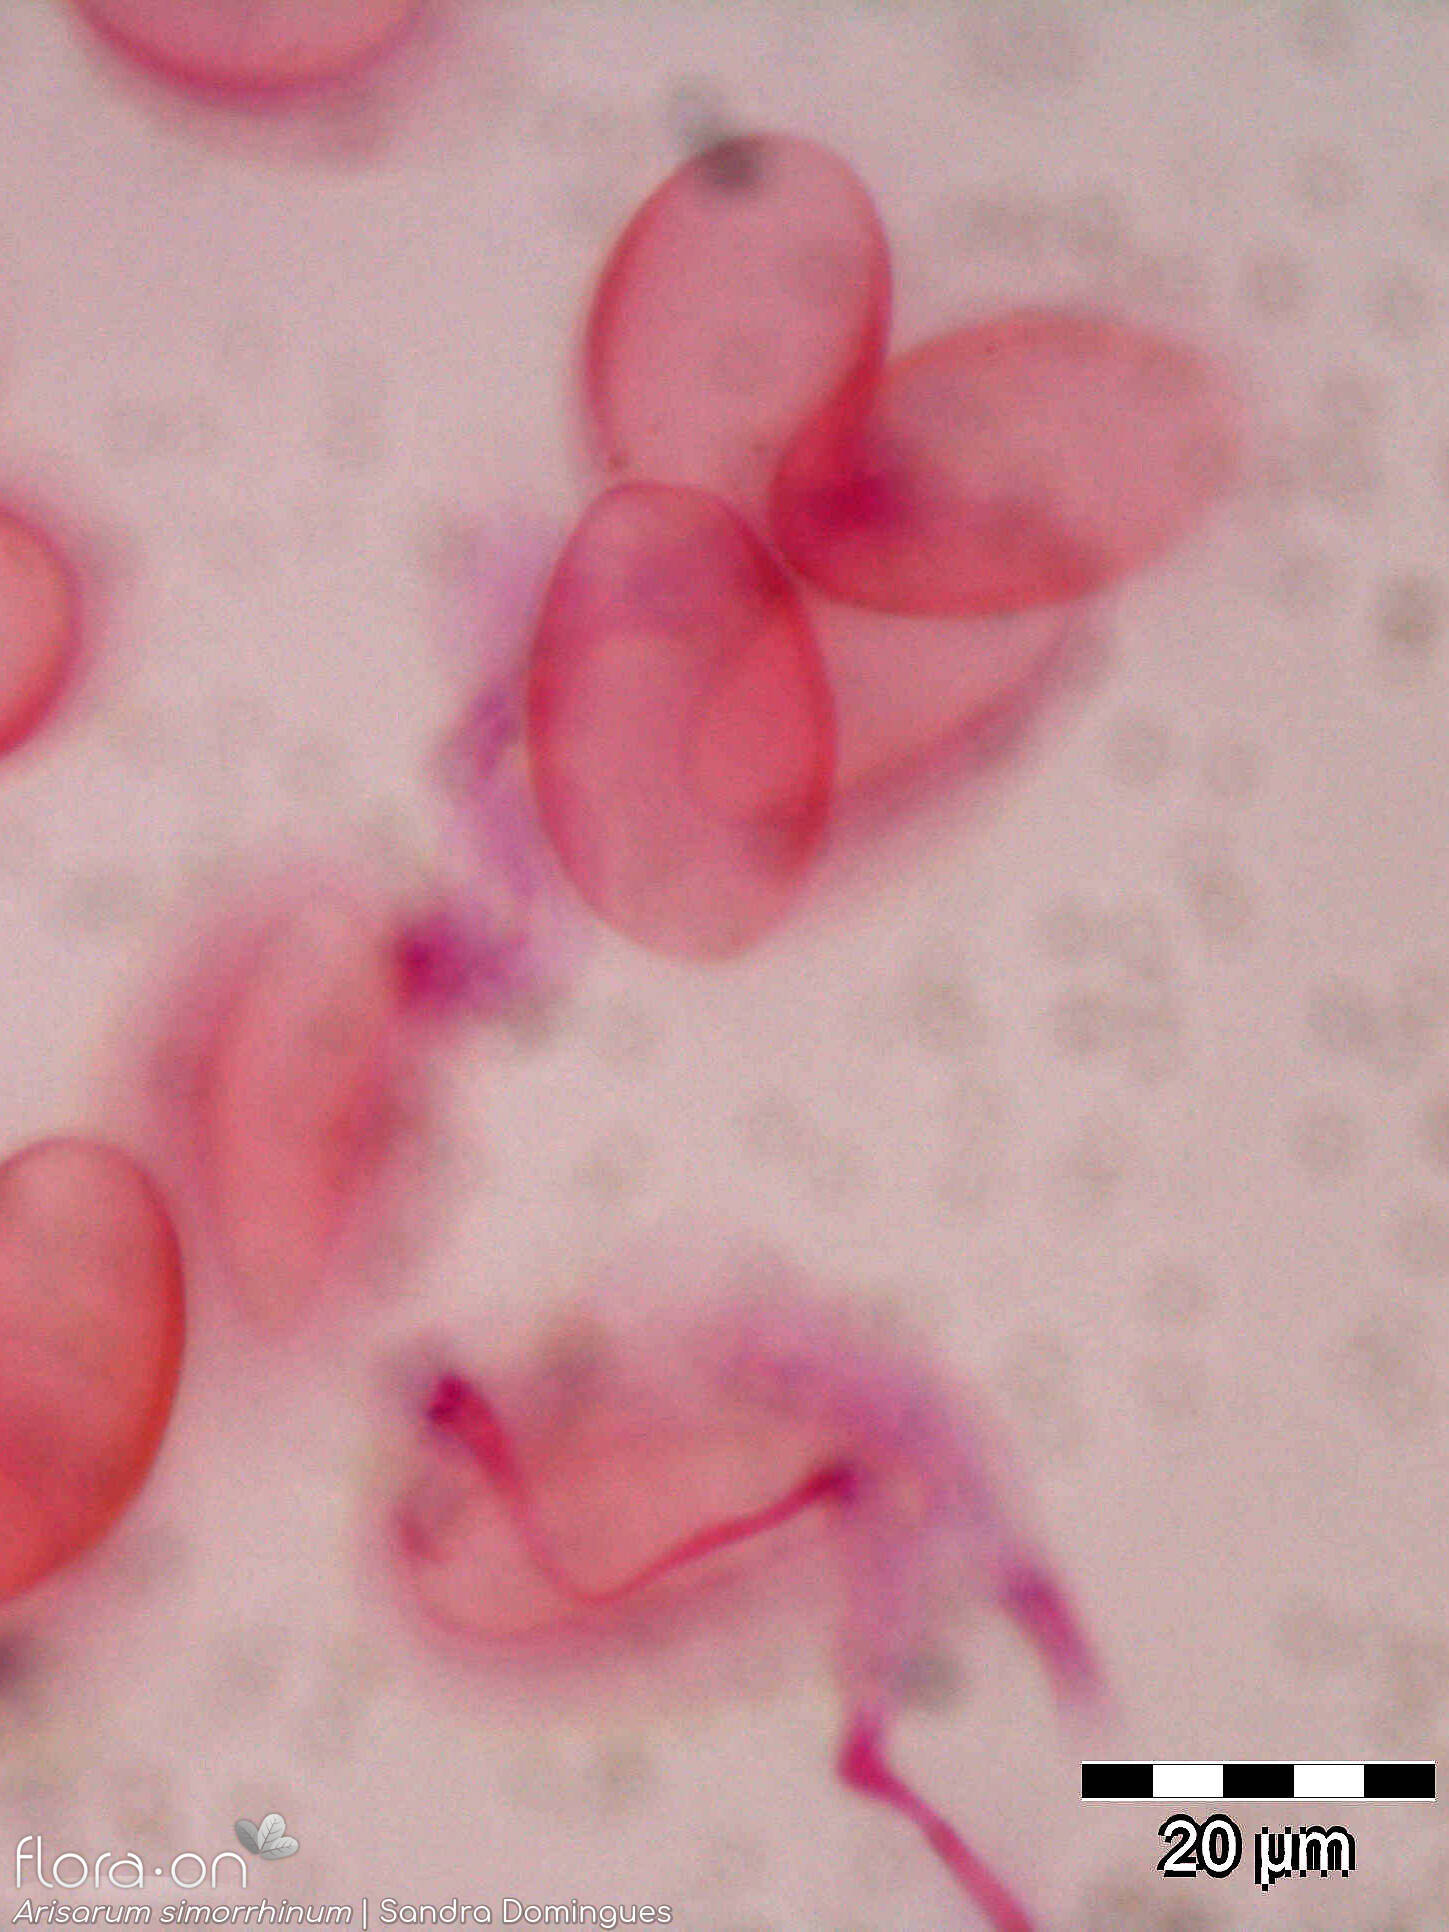 Arisarum simorrhinum - Pólen | Sandra Domingues; CC BY-NC 4.0